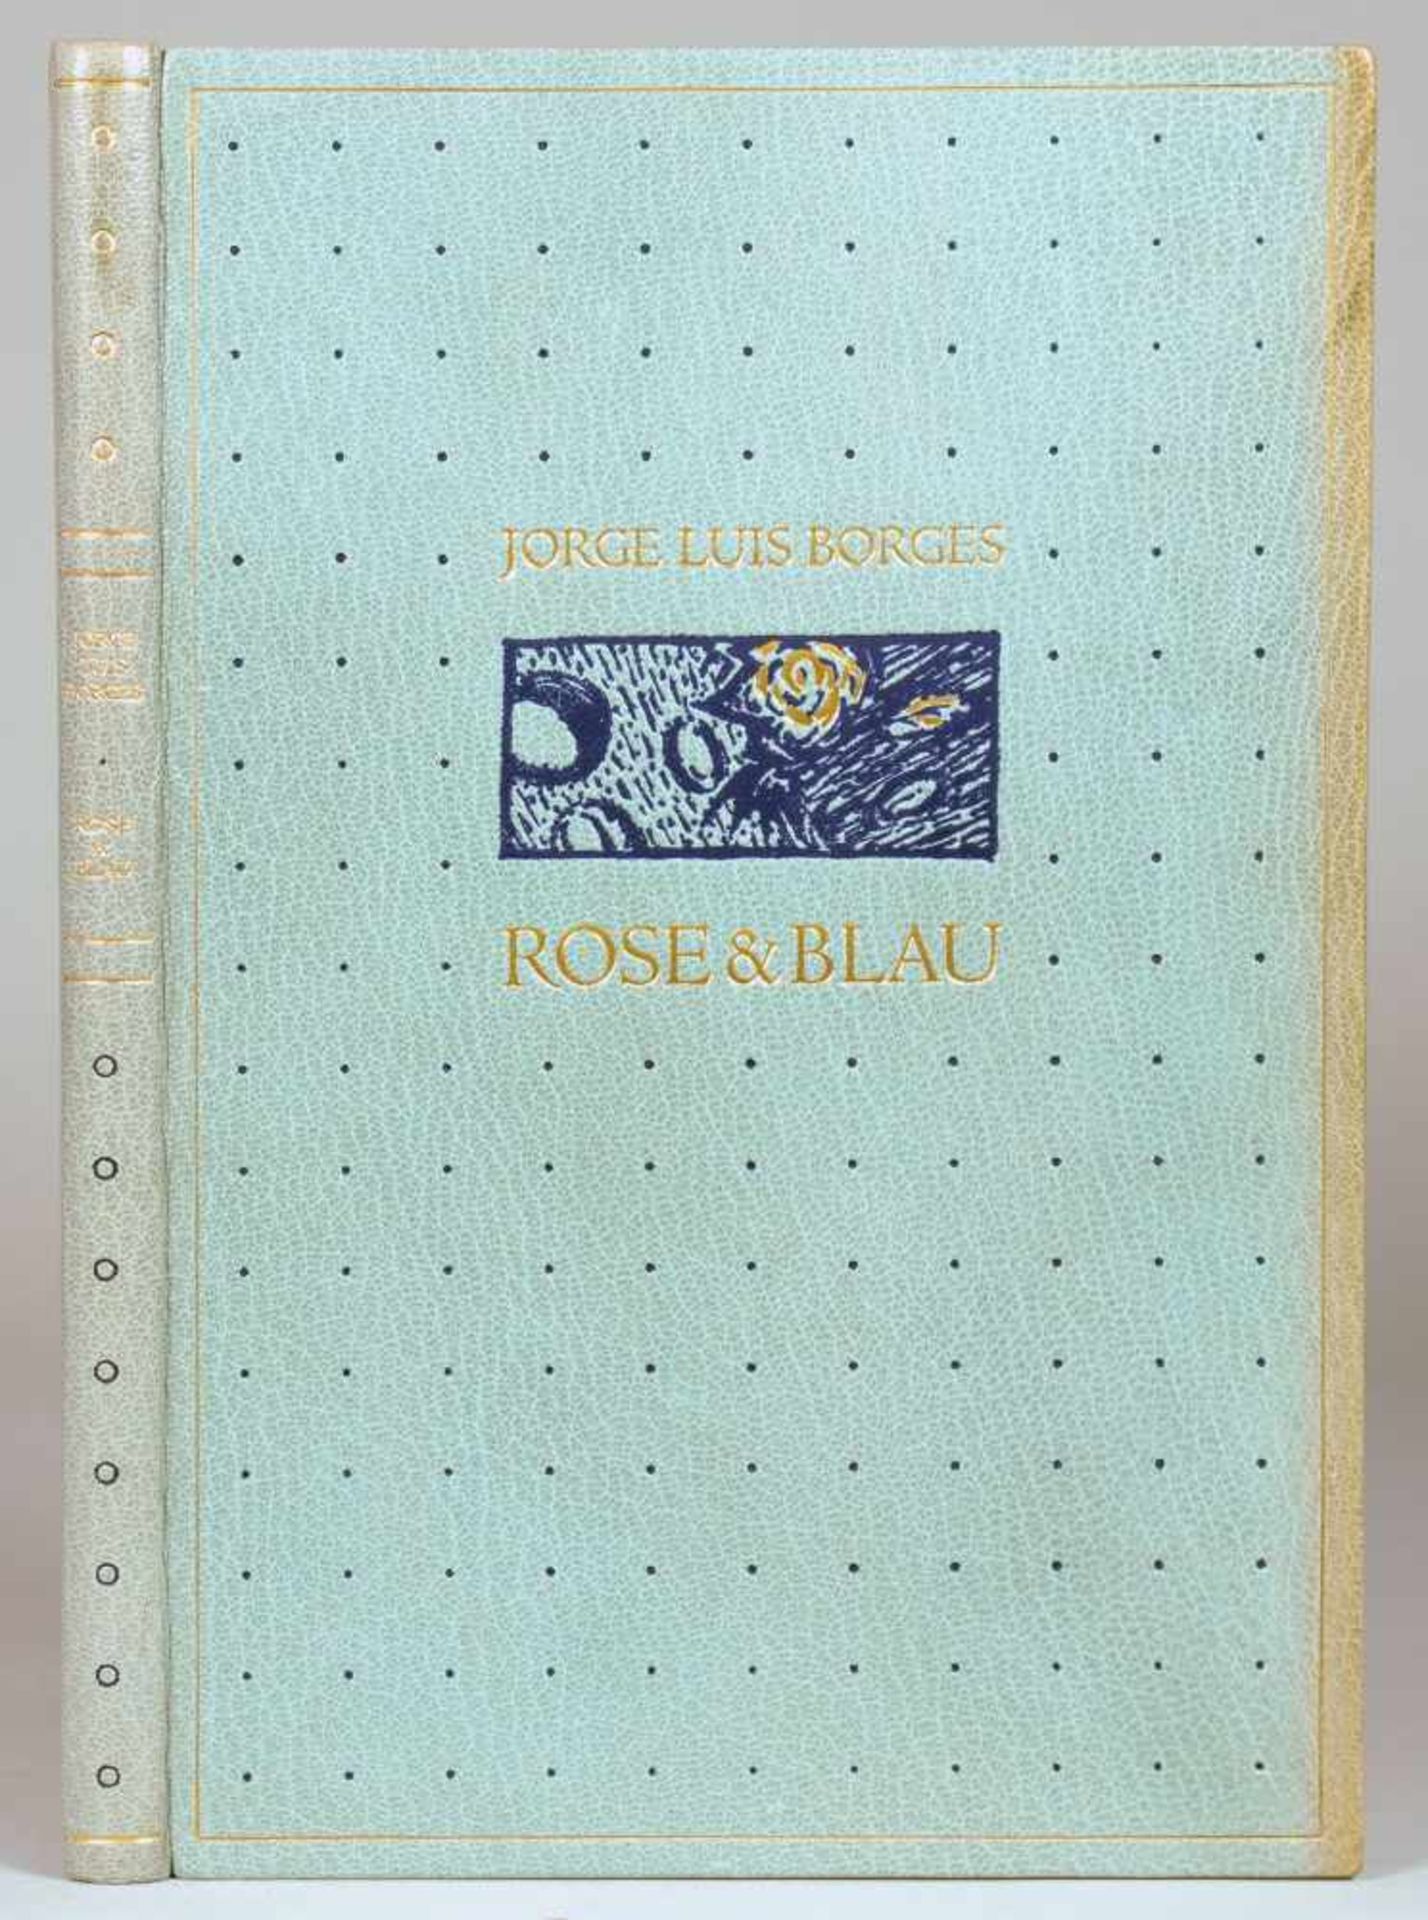 The Bear Press - Jorge Luis Borges. Rose & Blau. Holzschnitte von Jürgen Wölbing. Bayreuth 1998/